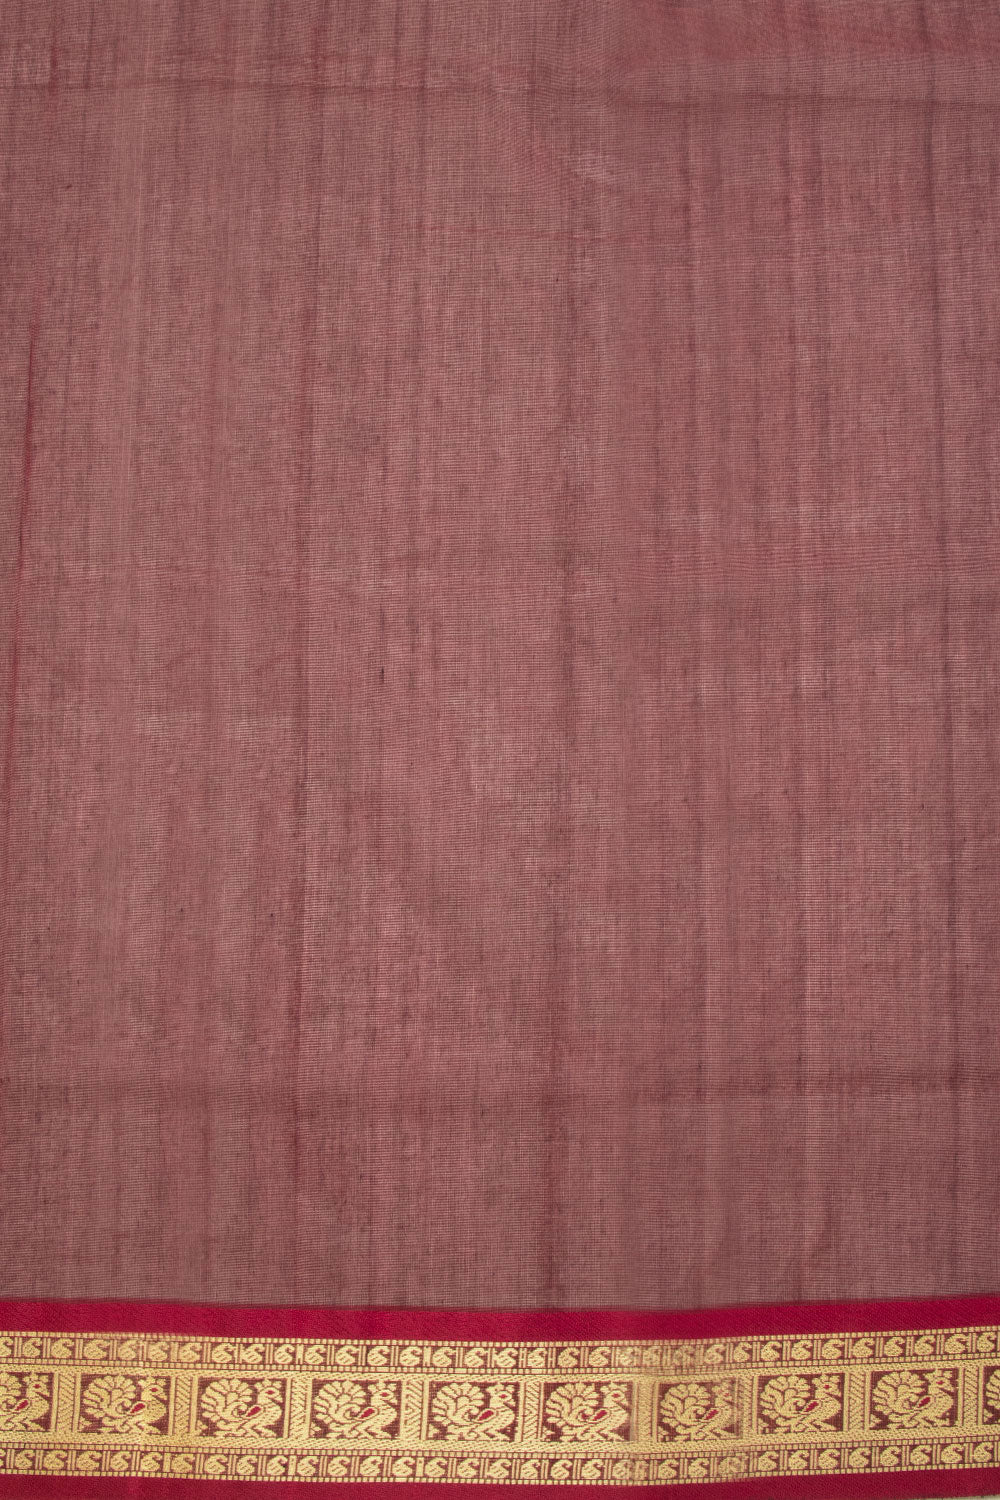 Green Madurai Silk Cotton Saree 10069900 - Avishya